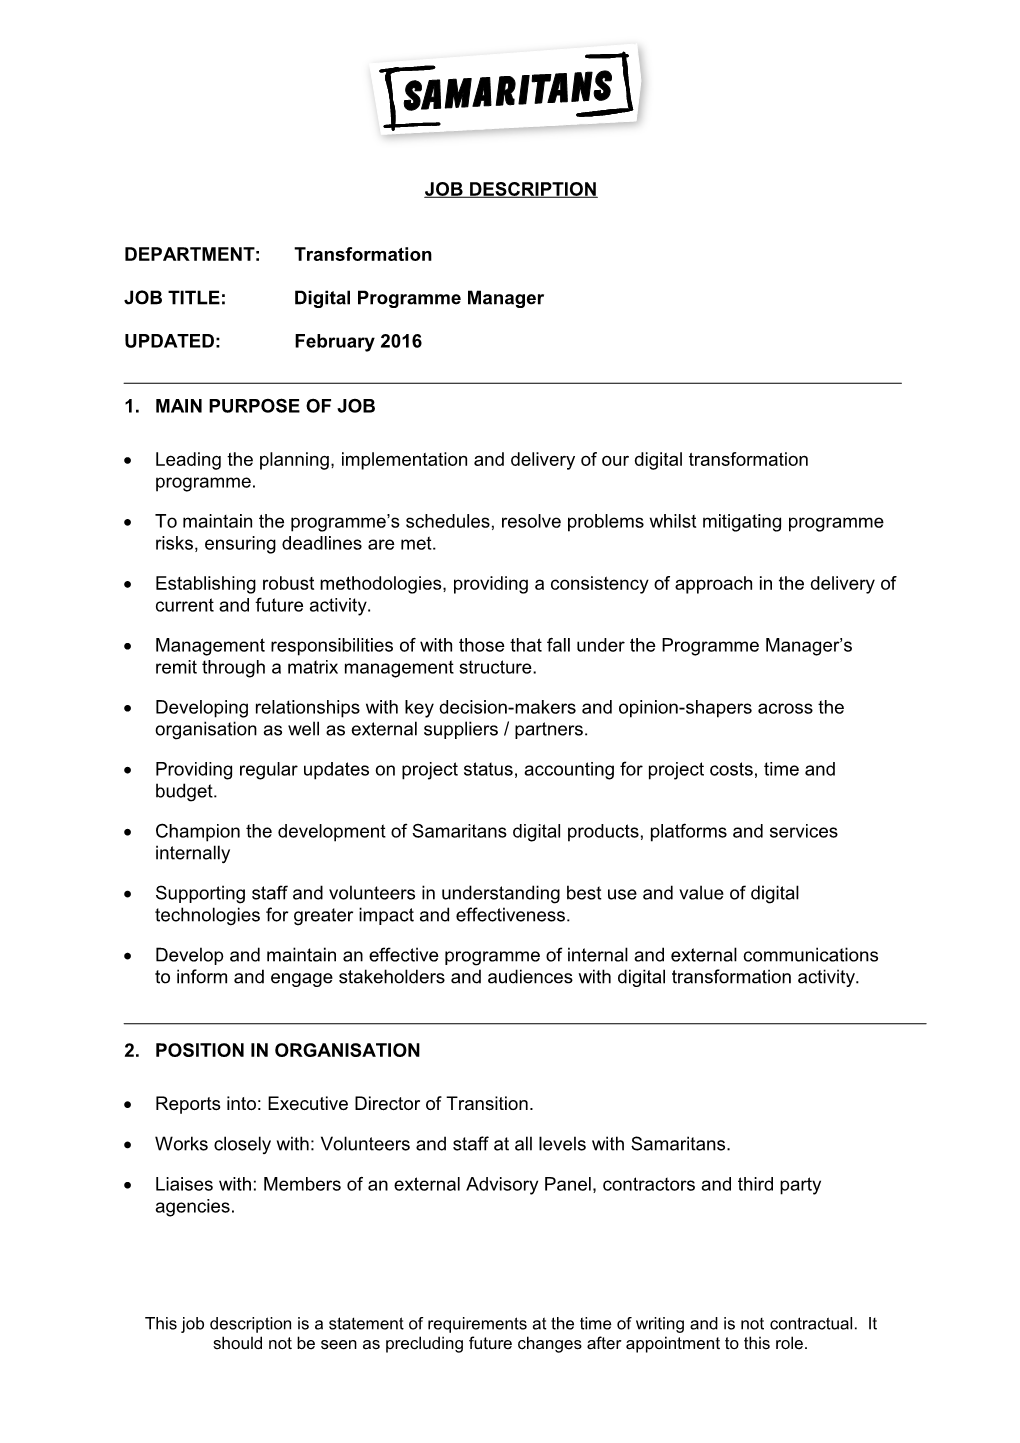 JOB TITLE: Digital Programme Manager